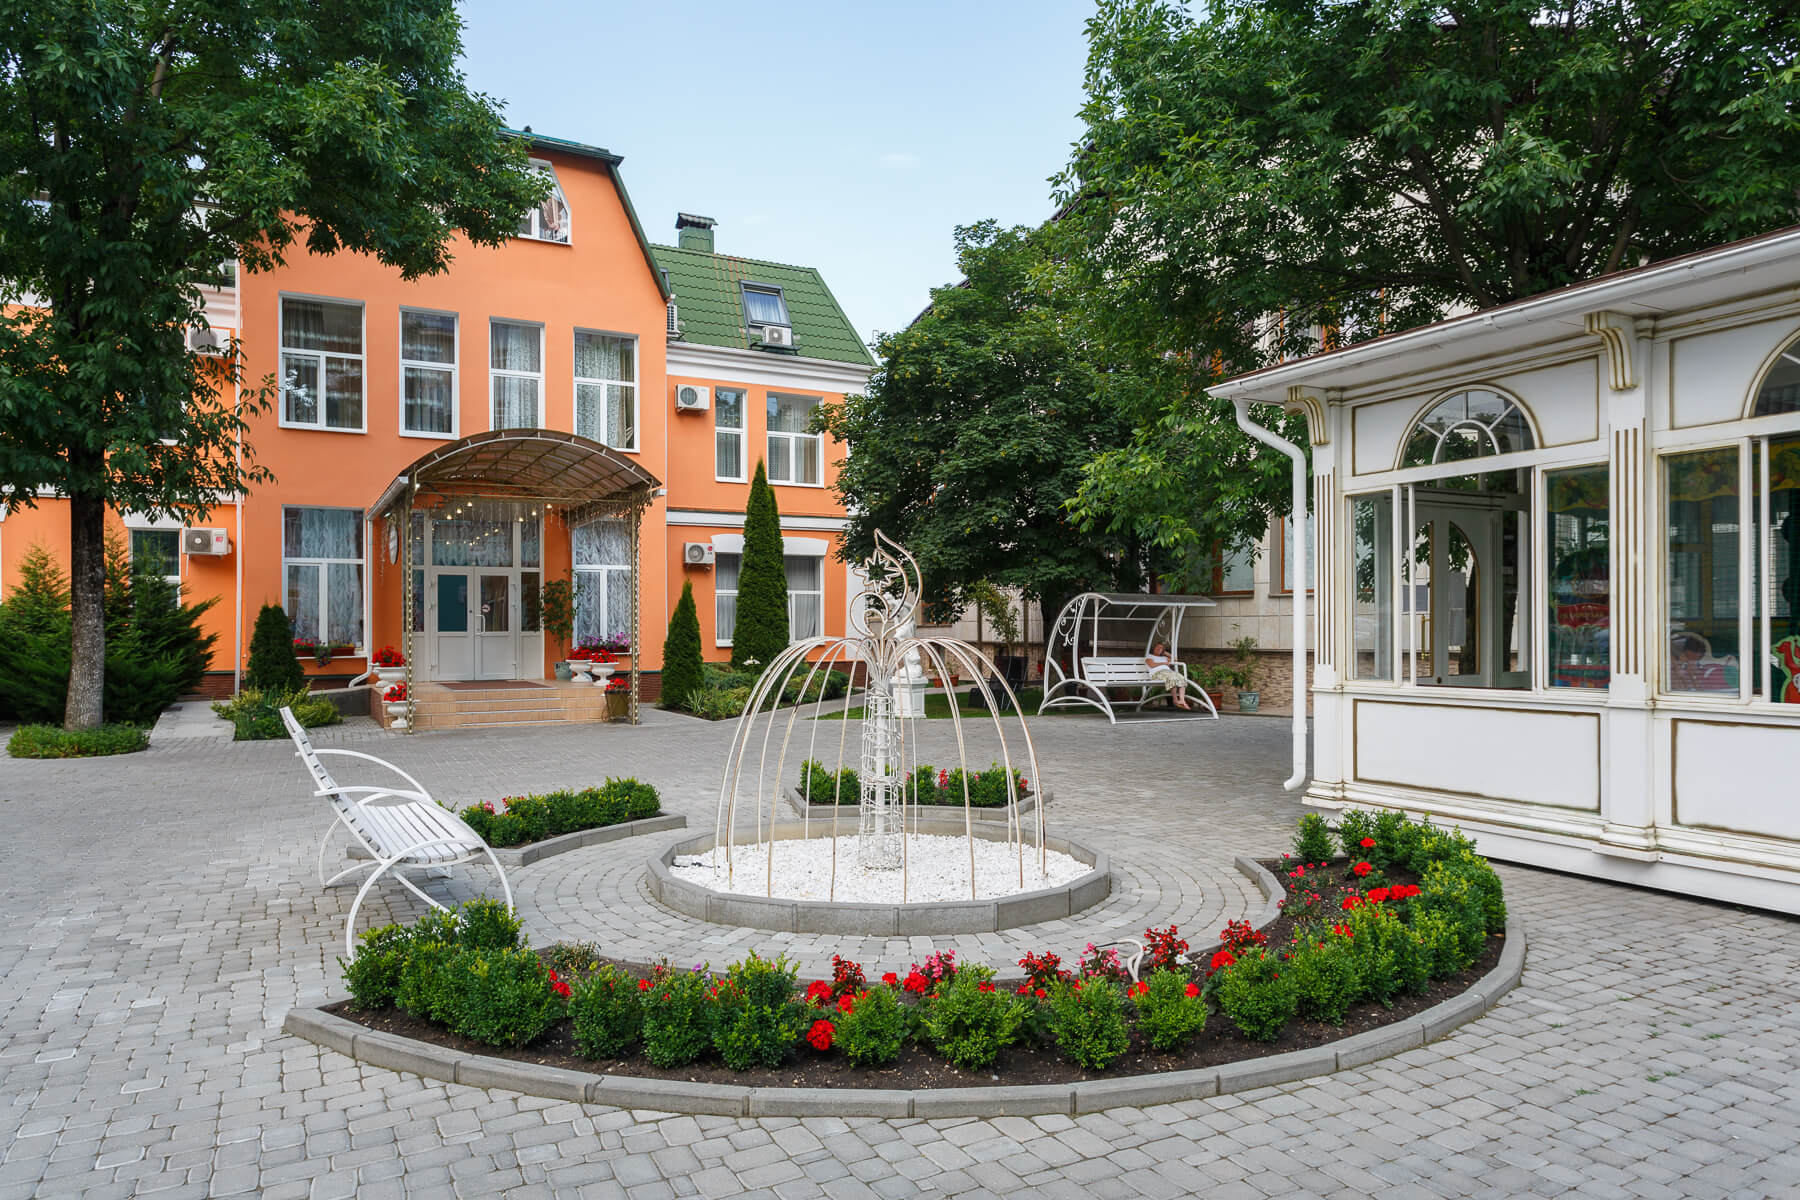 Территория перед отелем украшена скульптурами и клумбами с цветами.